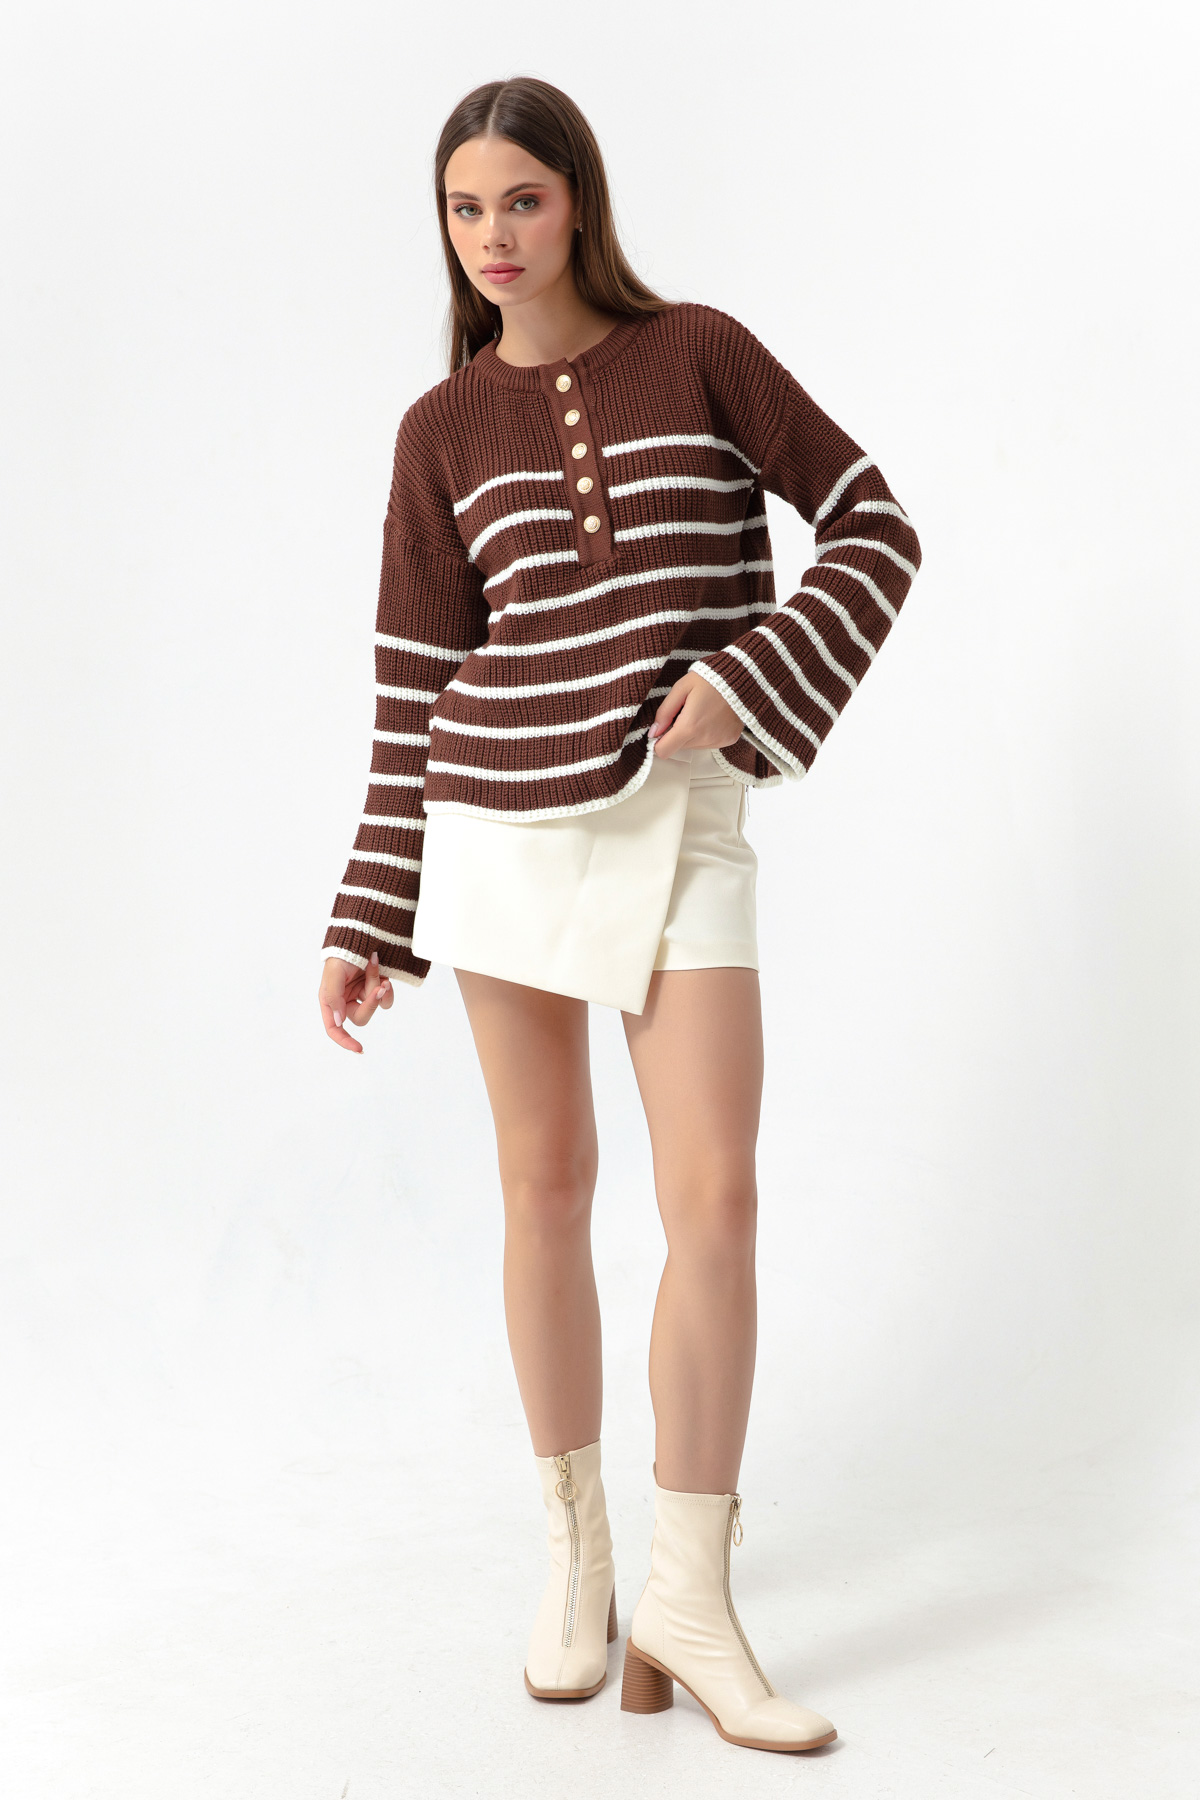 Women's Brown Striped Knitwear Sweater